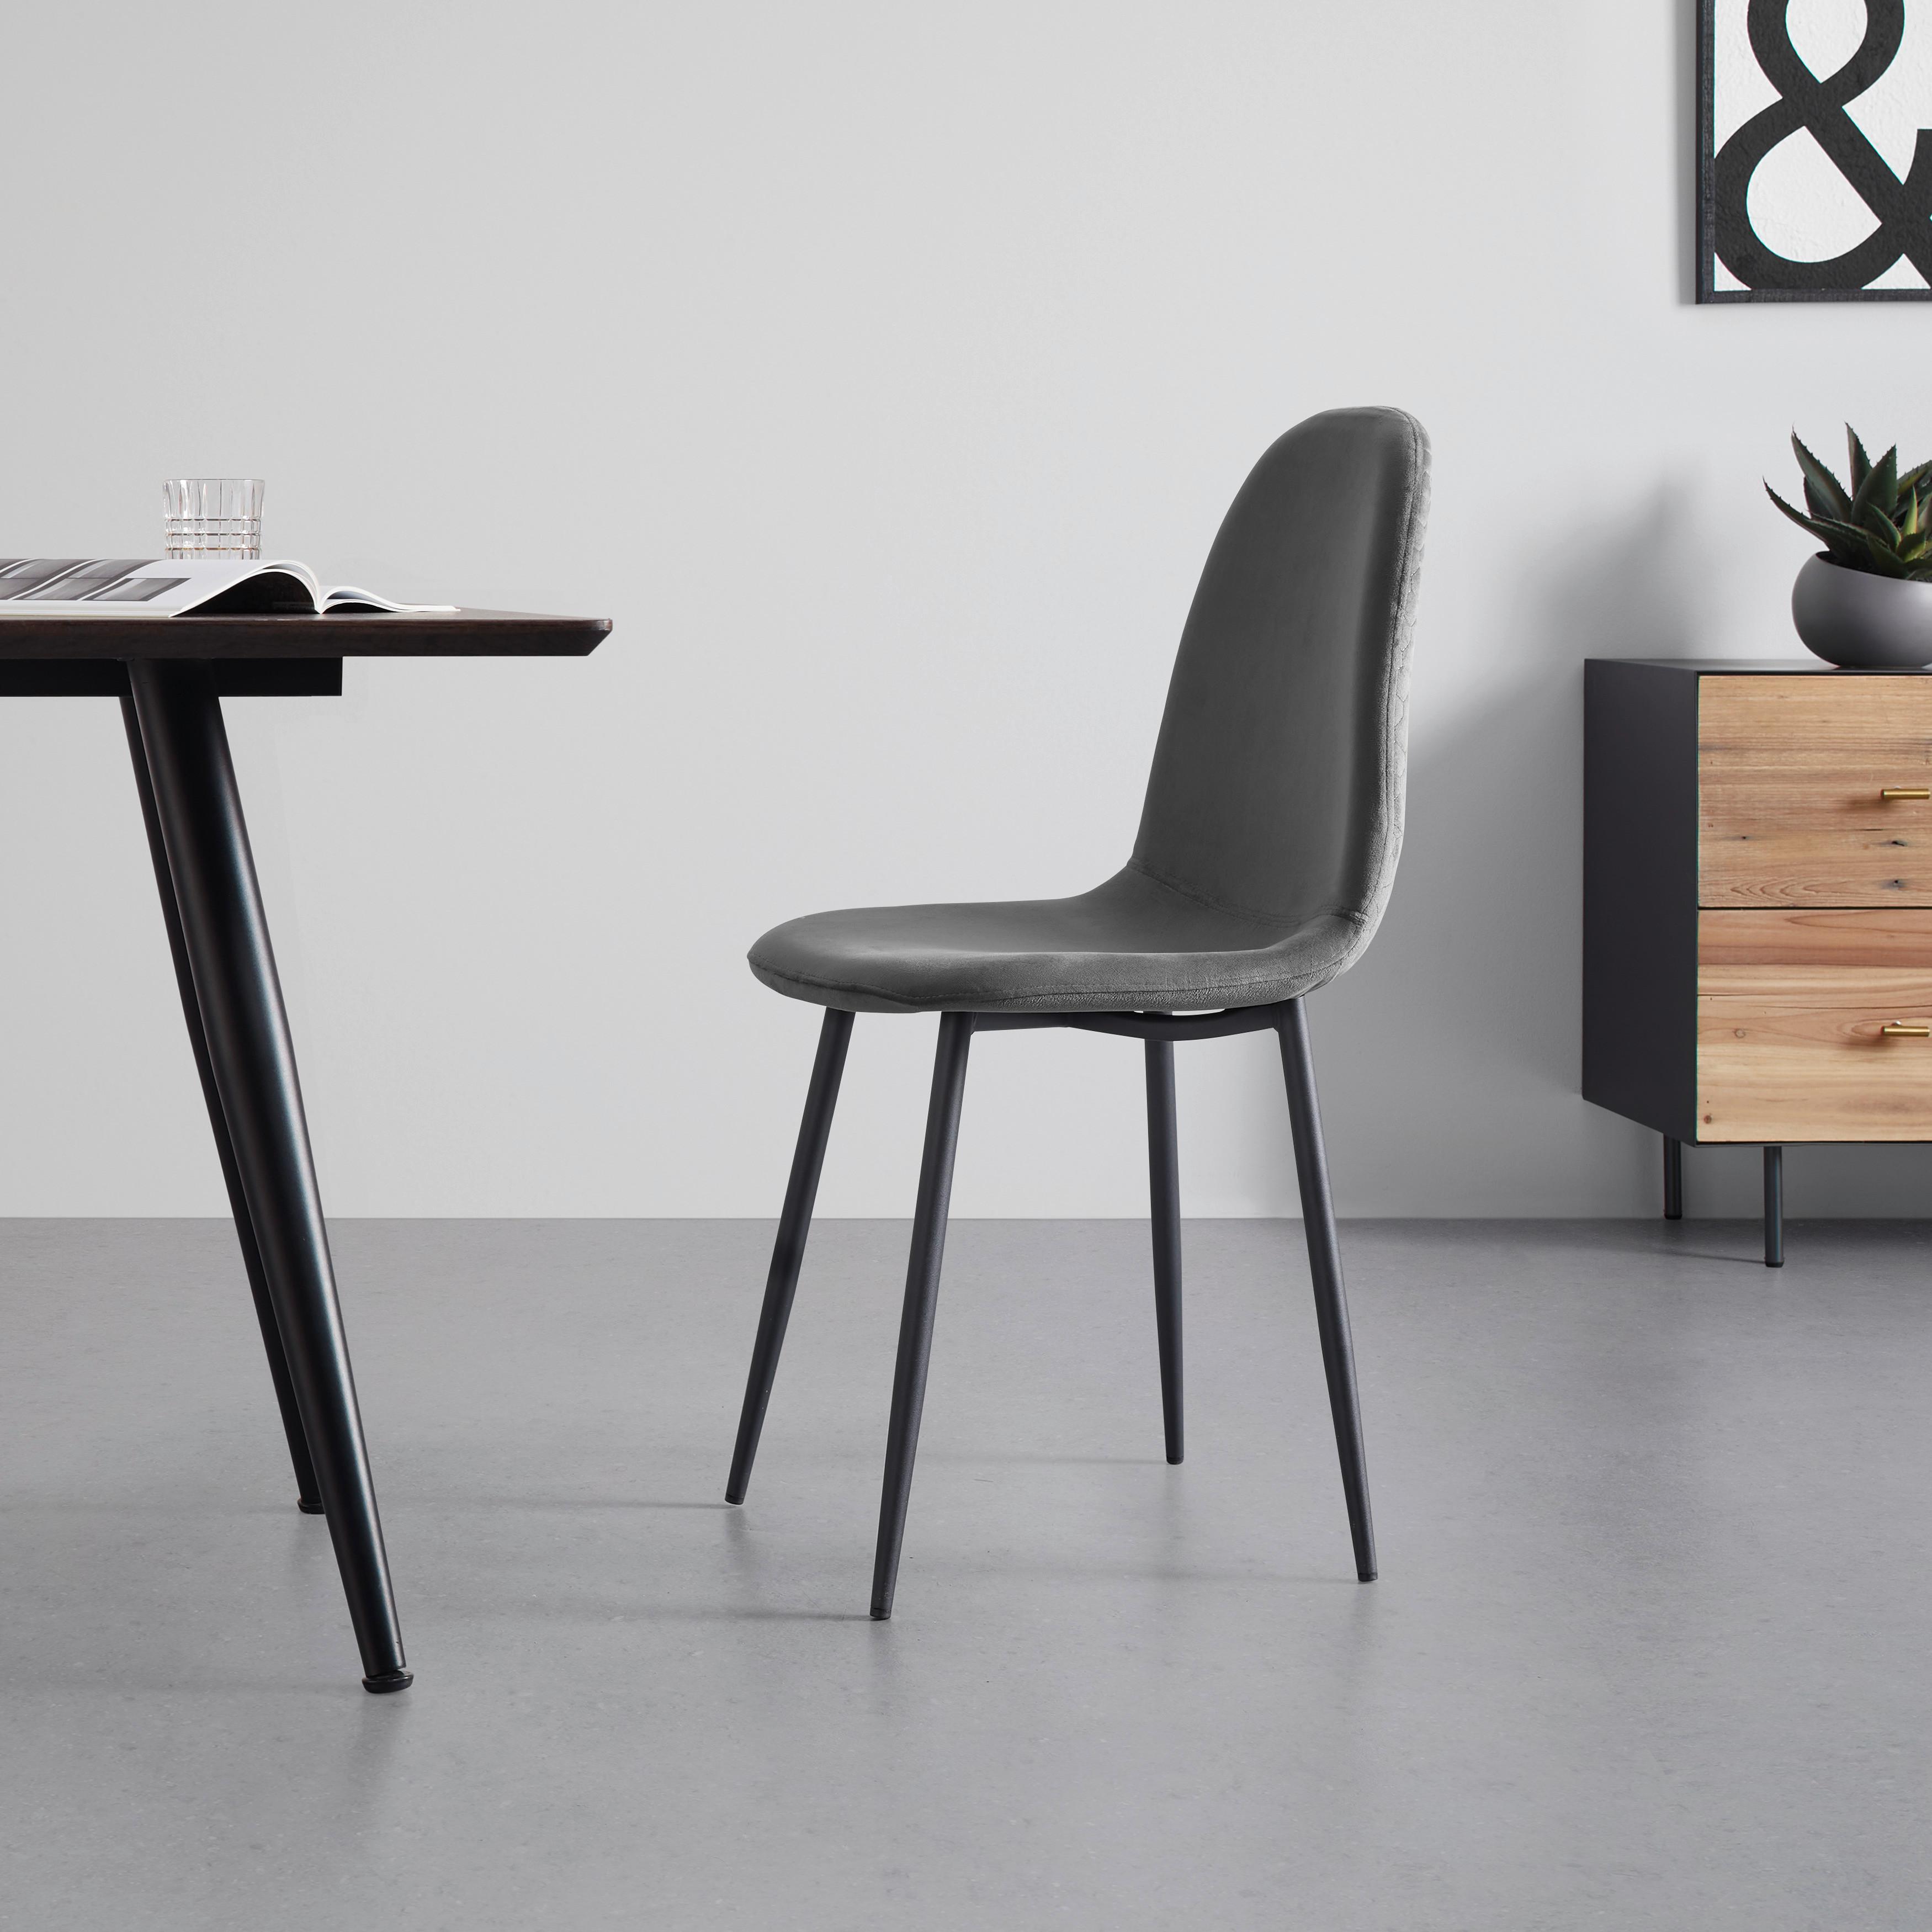 Jídelní židle Ida - šedá/černá, Moderní, kov/dřevo (44/89/41,5cm) - Modern Living